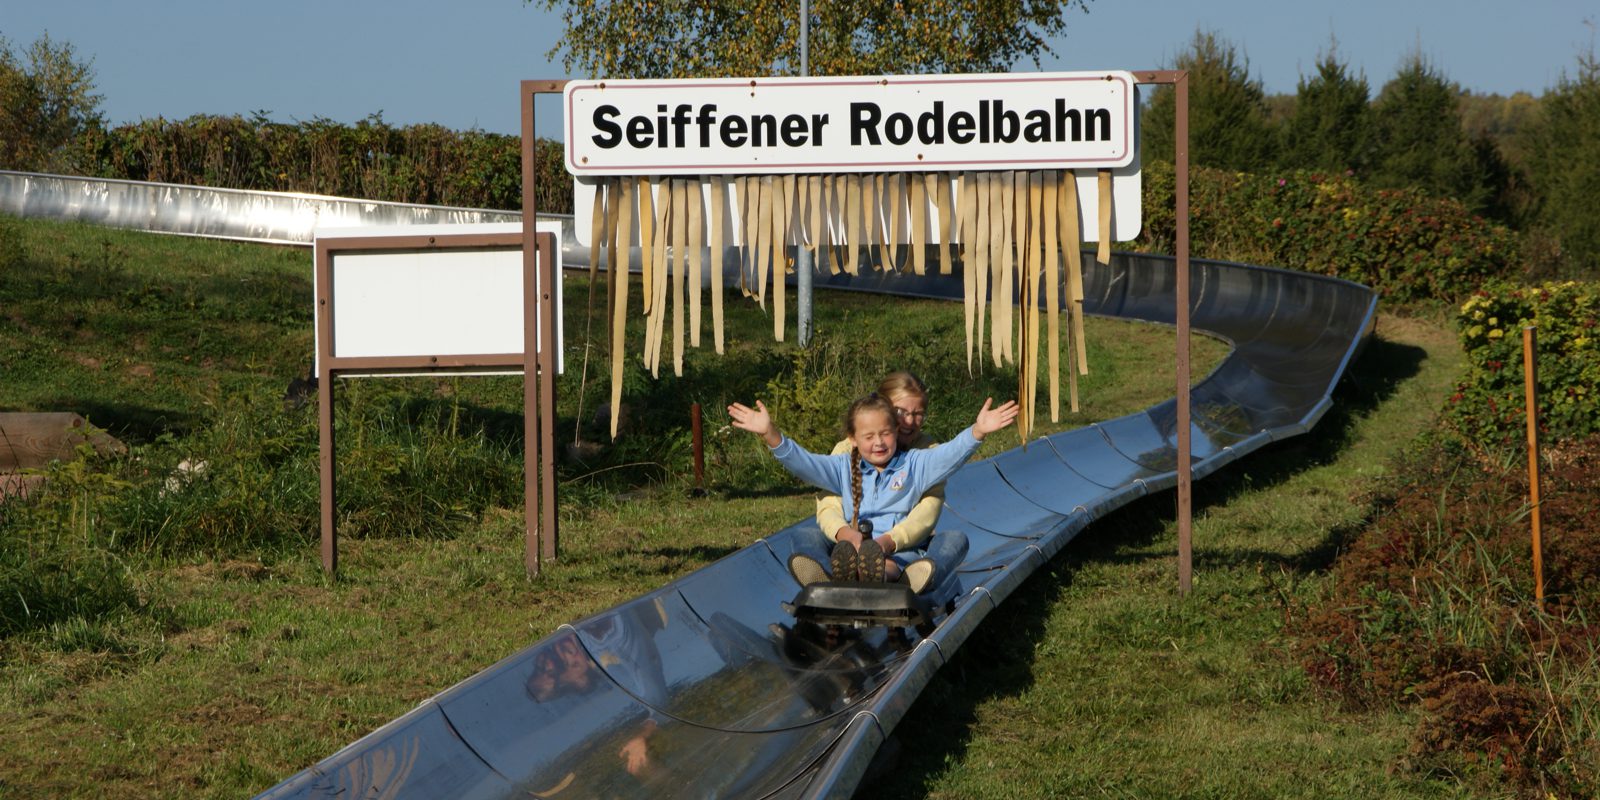 Sommerrodelbahn in Seiffen